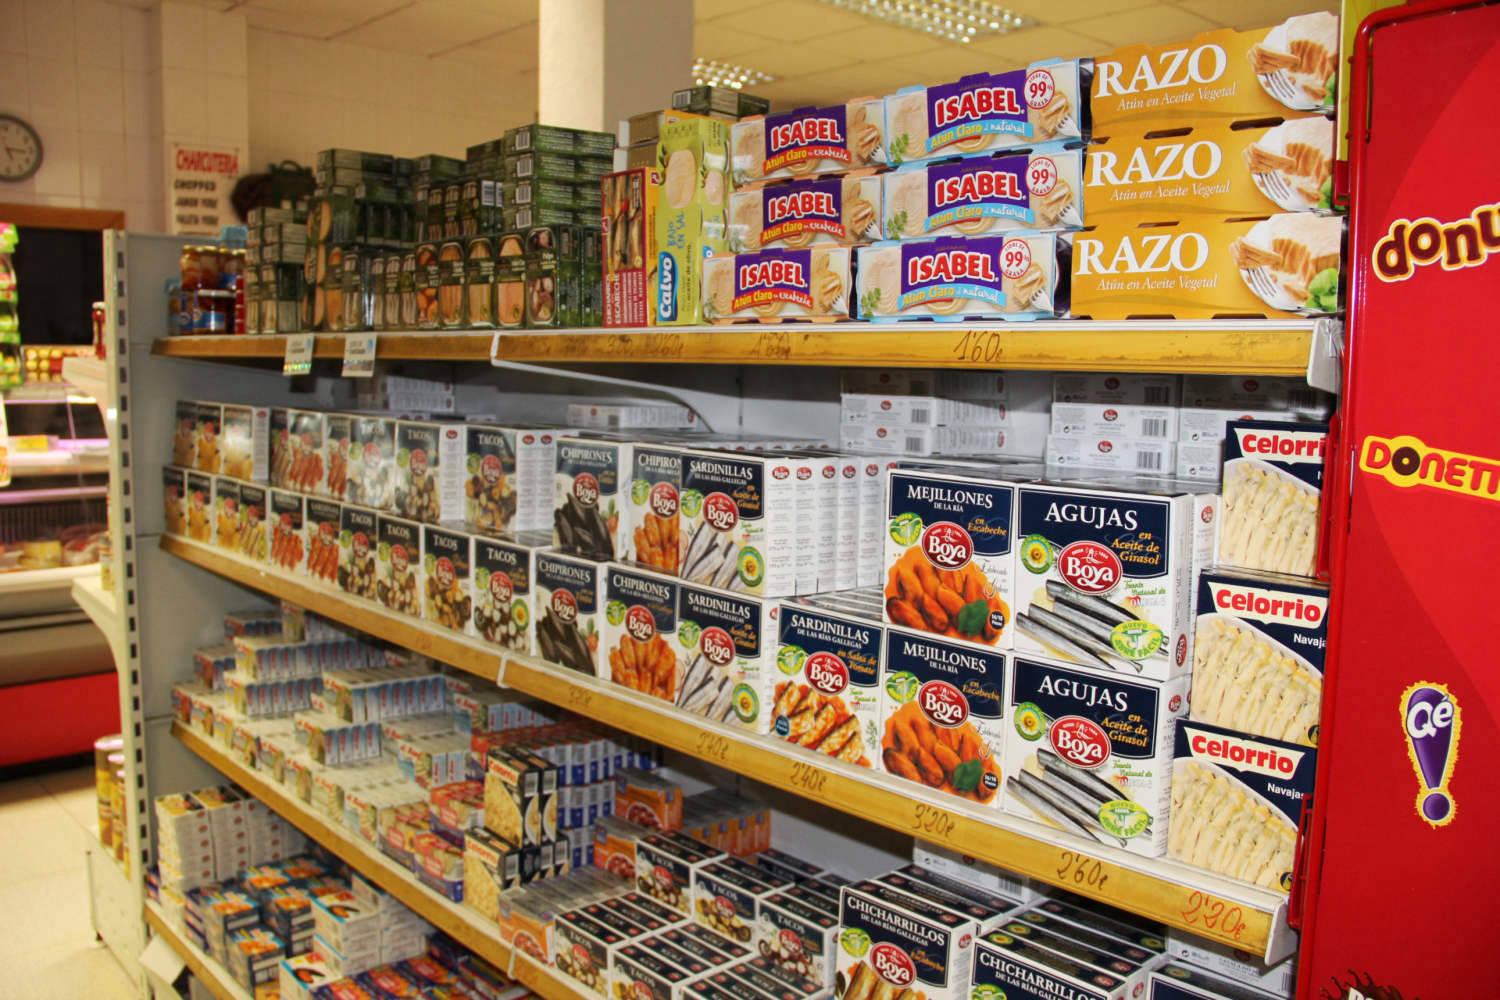 Supermercado Boni en Arenas de San Pedro Gredos Valle del Tiétar. Autoservicio alimentación jamones embutidos limpieza charcutería tienda alimentos y bebidas